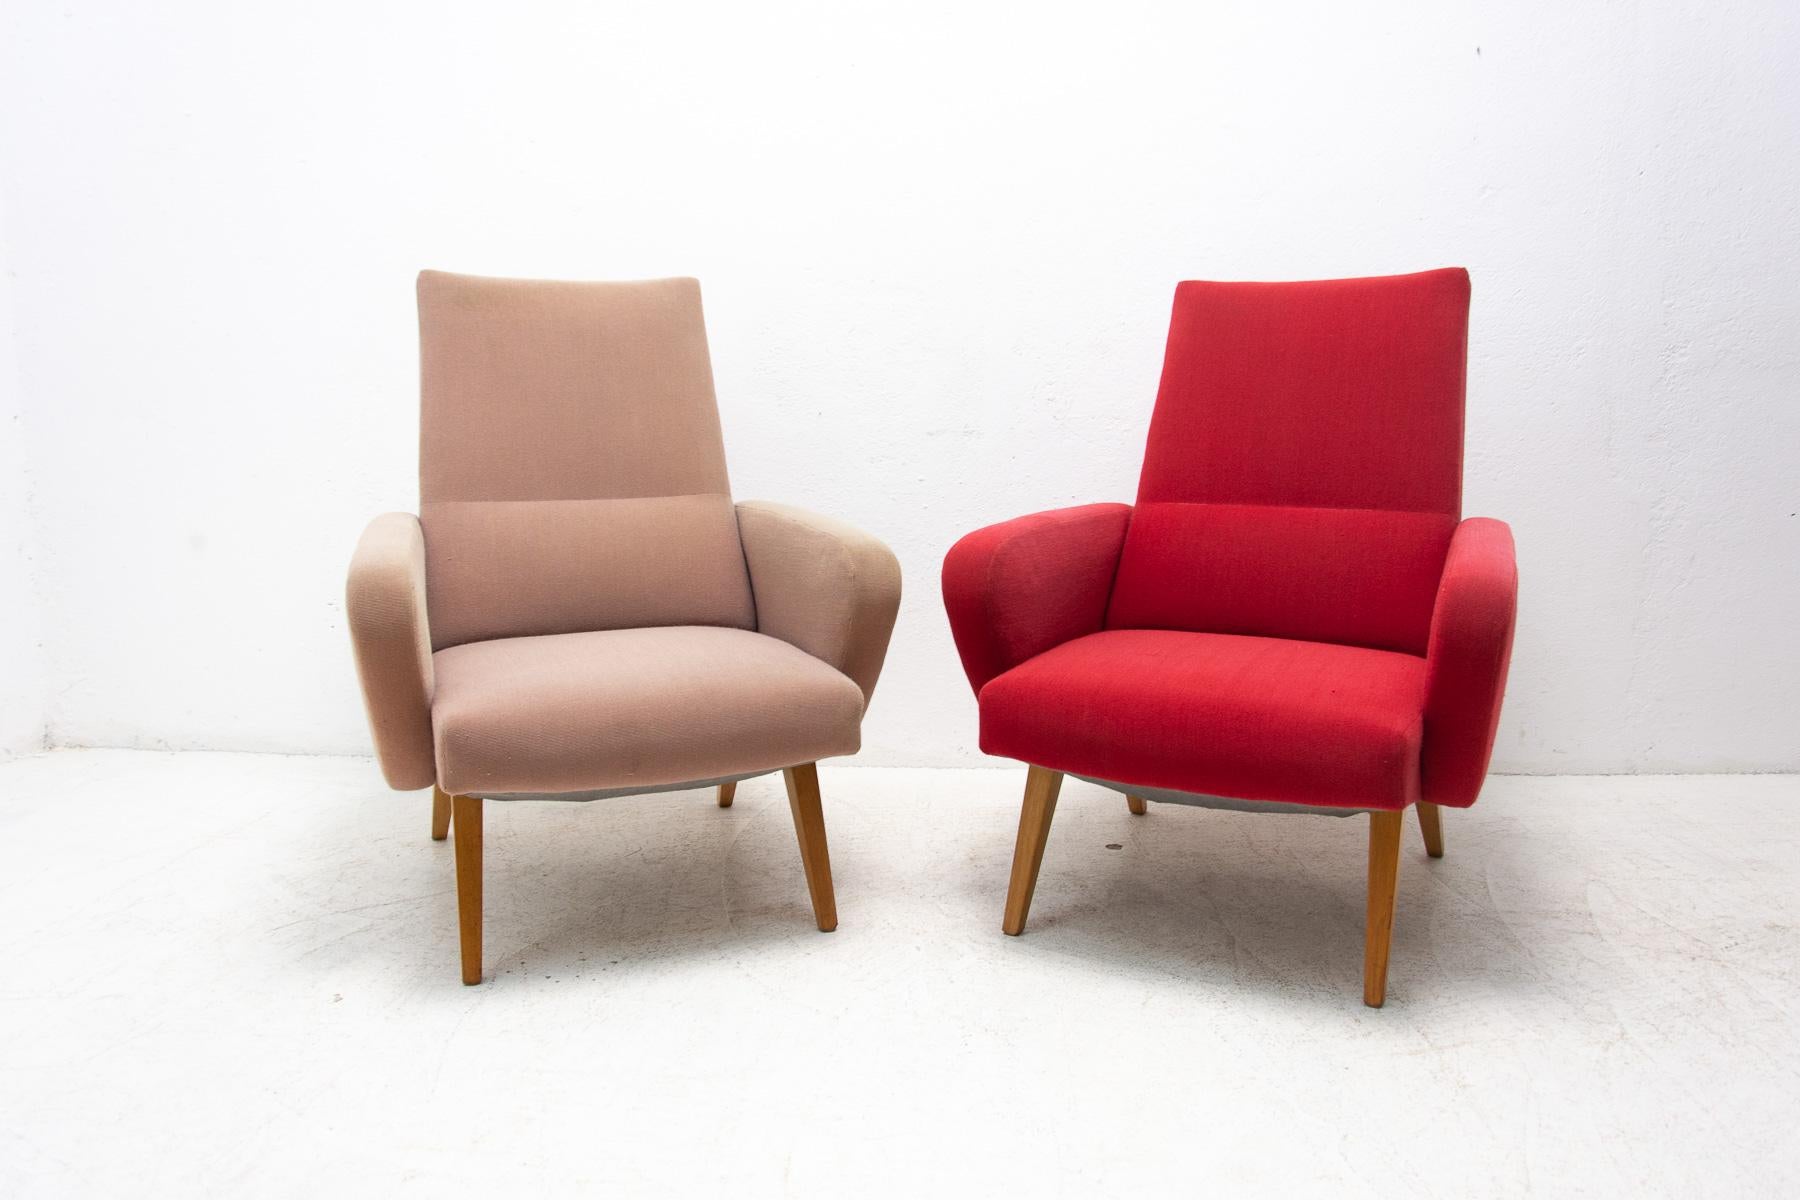 Ein Paar Sessel aus der Mitte des Jahrhunderts für Sie und Ihn.
Entworfen in den 1960er Jahren von dem bekannten tschechoslowakischen Designer Jaroslav Šmídek für UP Závody. Hergestellt in der ehemaligen Tschechoslowakei.
Hergestellt aus Stoff,